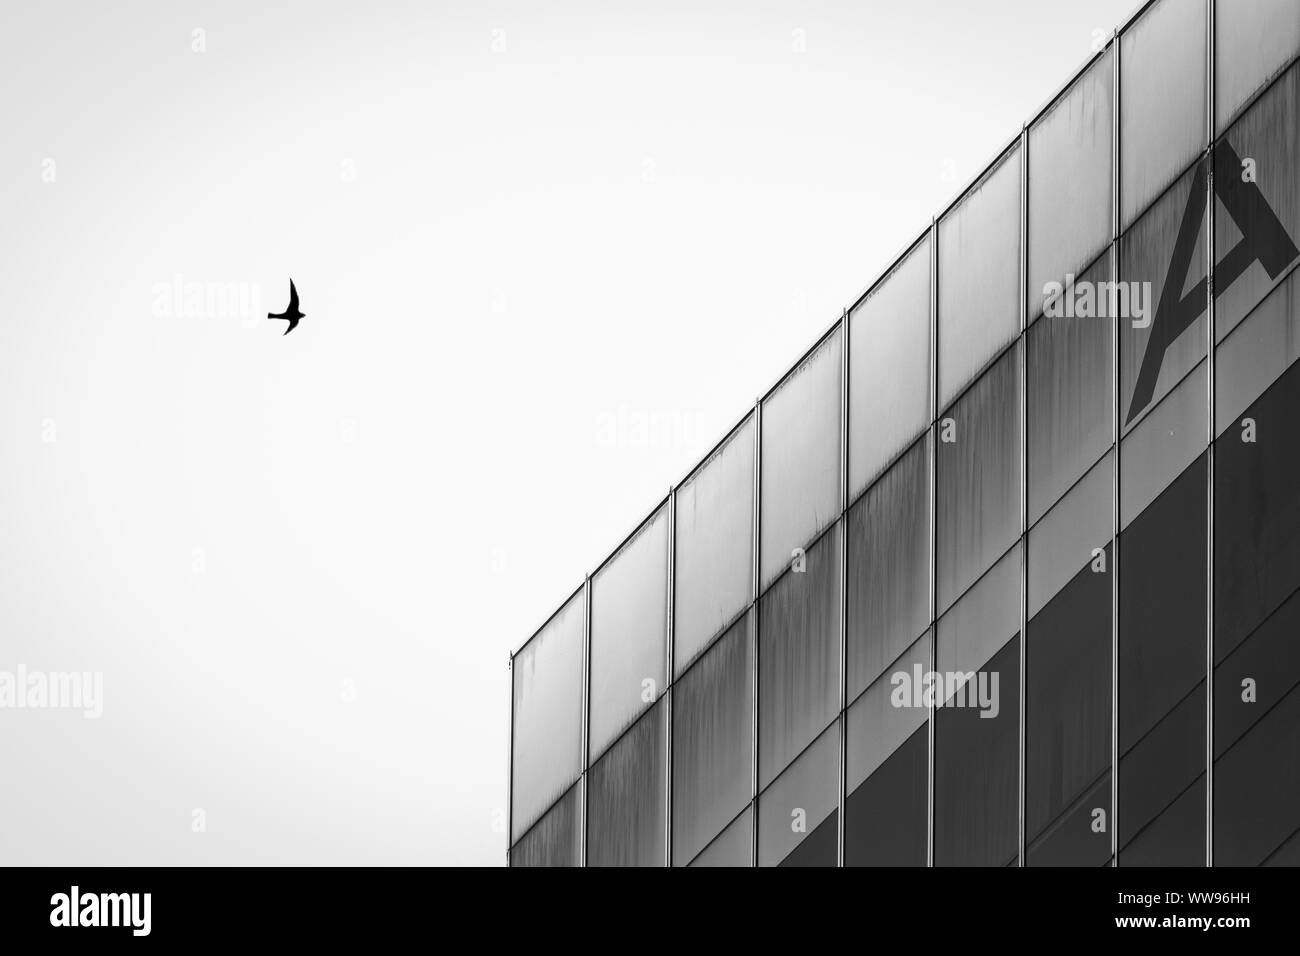 Architecture bâtiment noir et blanc avec seul oiseau volant au-dessus Banque D'Images